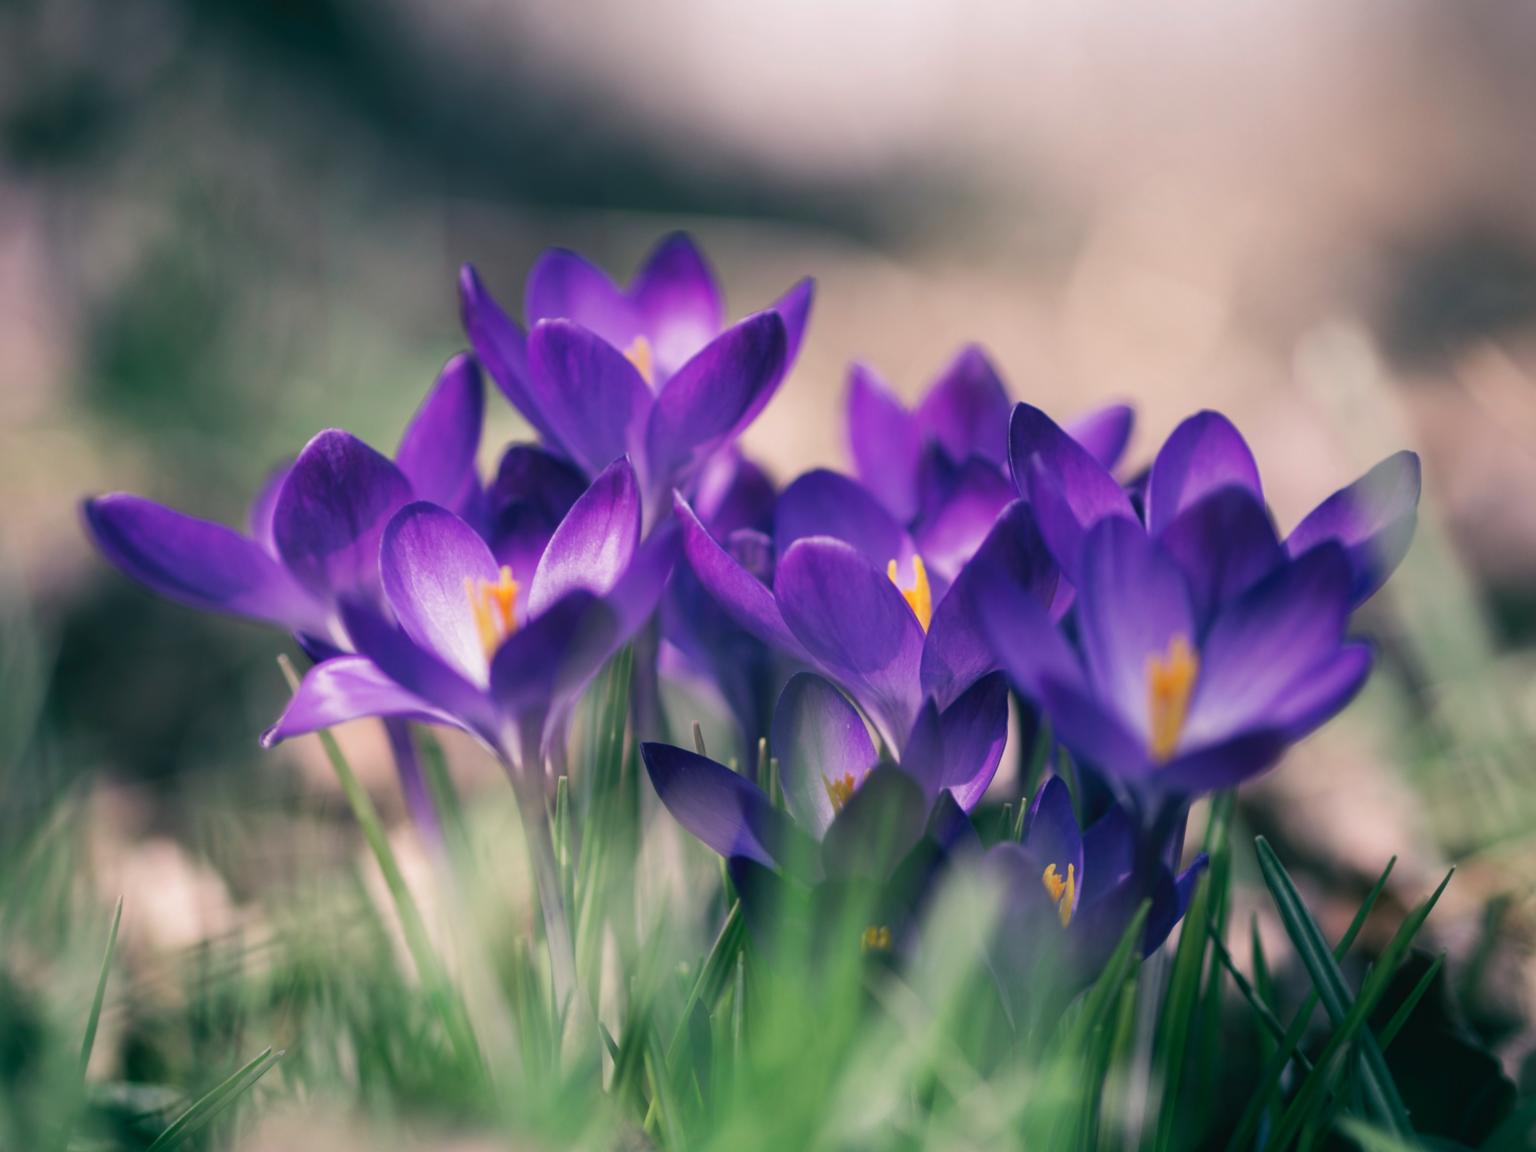 Krokusse kündigen den Frühling an (c) Foto von Aaron Burden auf Unsplash